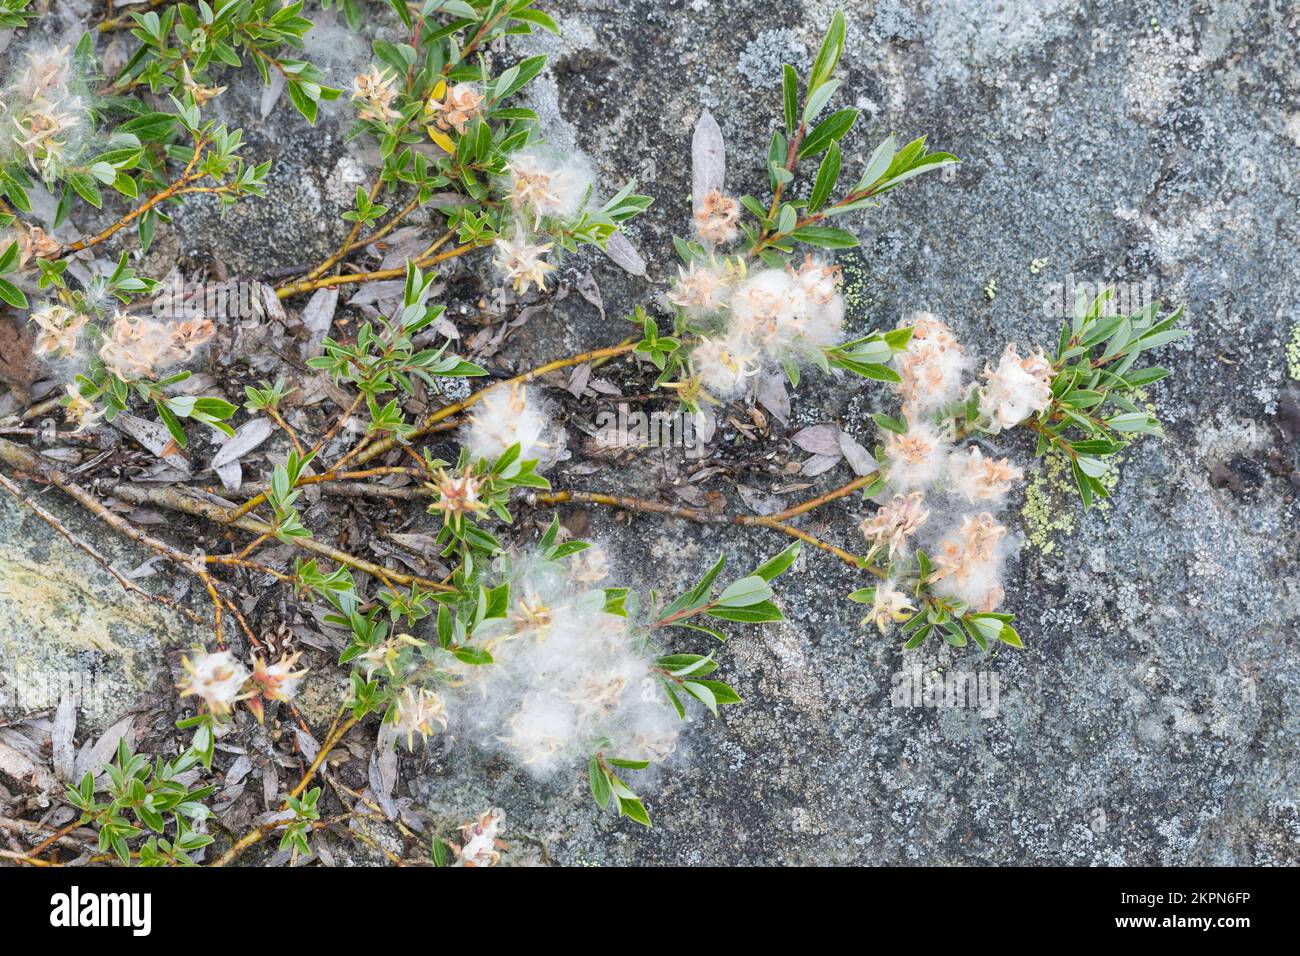 Kriech-Weide, Kriechweide, mit Samen, Samenwolle, Salix repens, creeping willow, le saule rampant Stock Photo